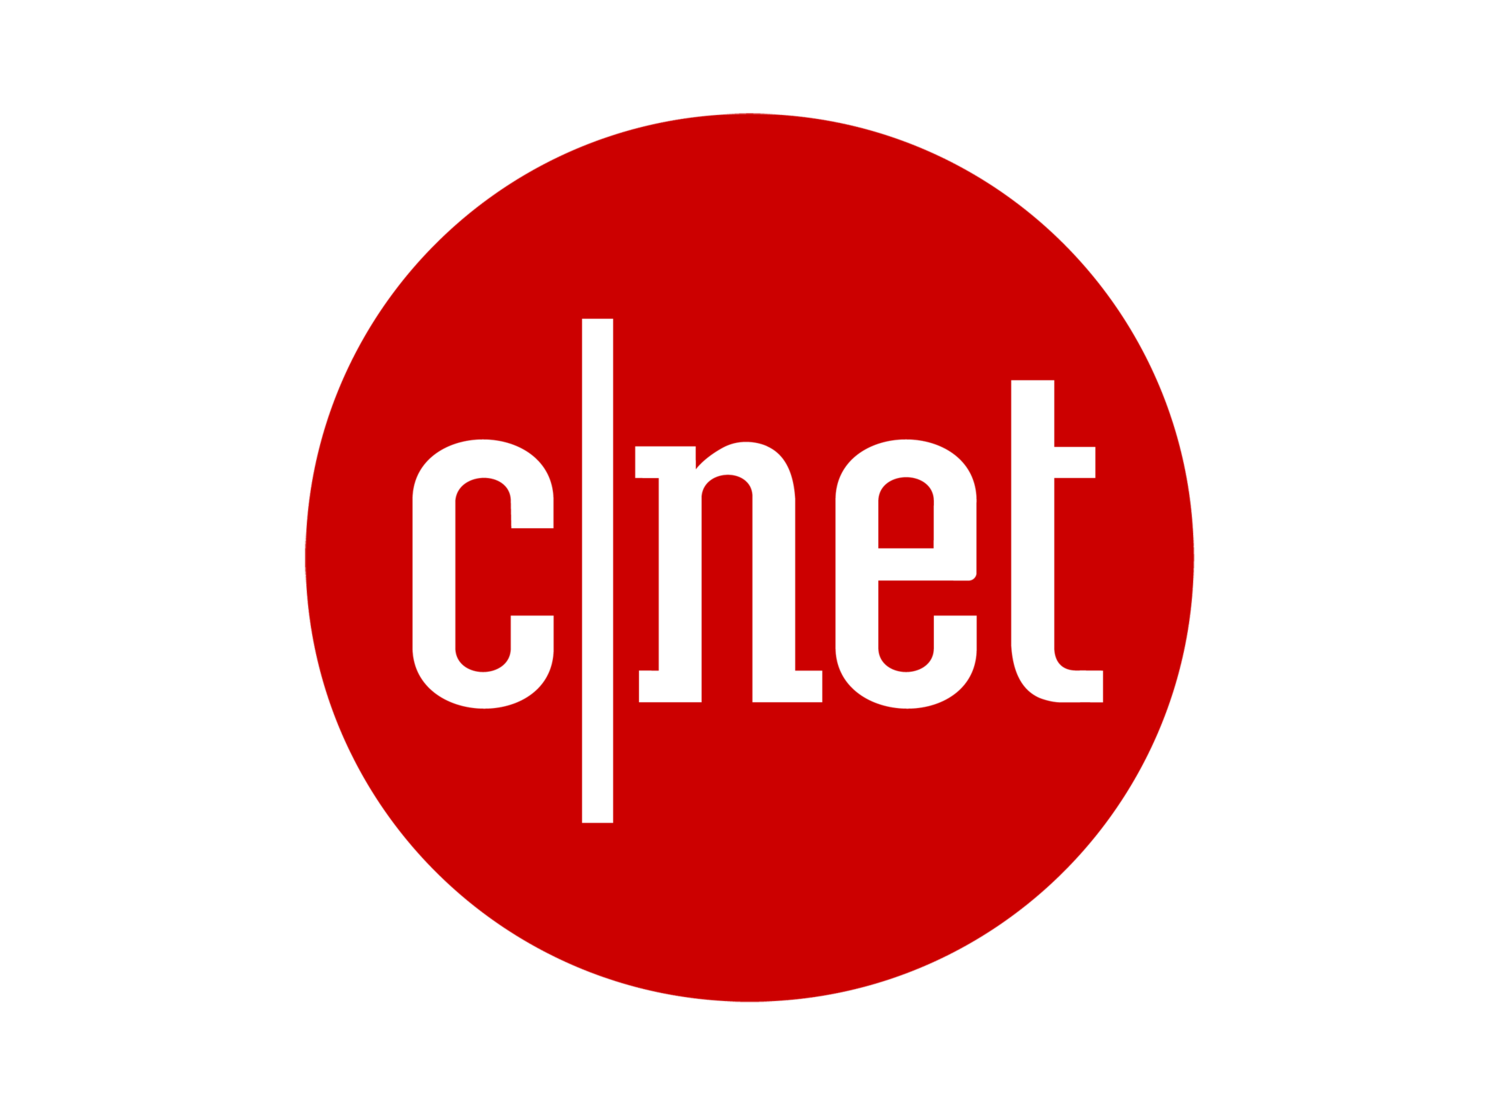 Cnet-logo-Pentagram.png